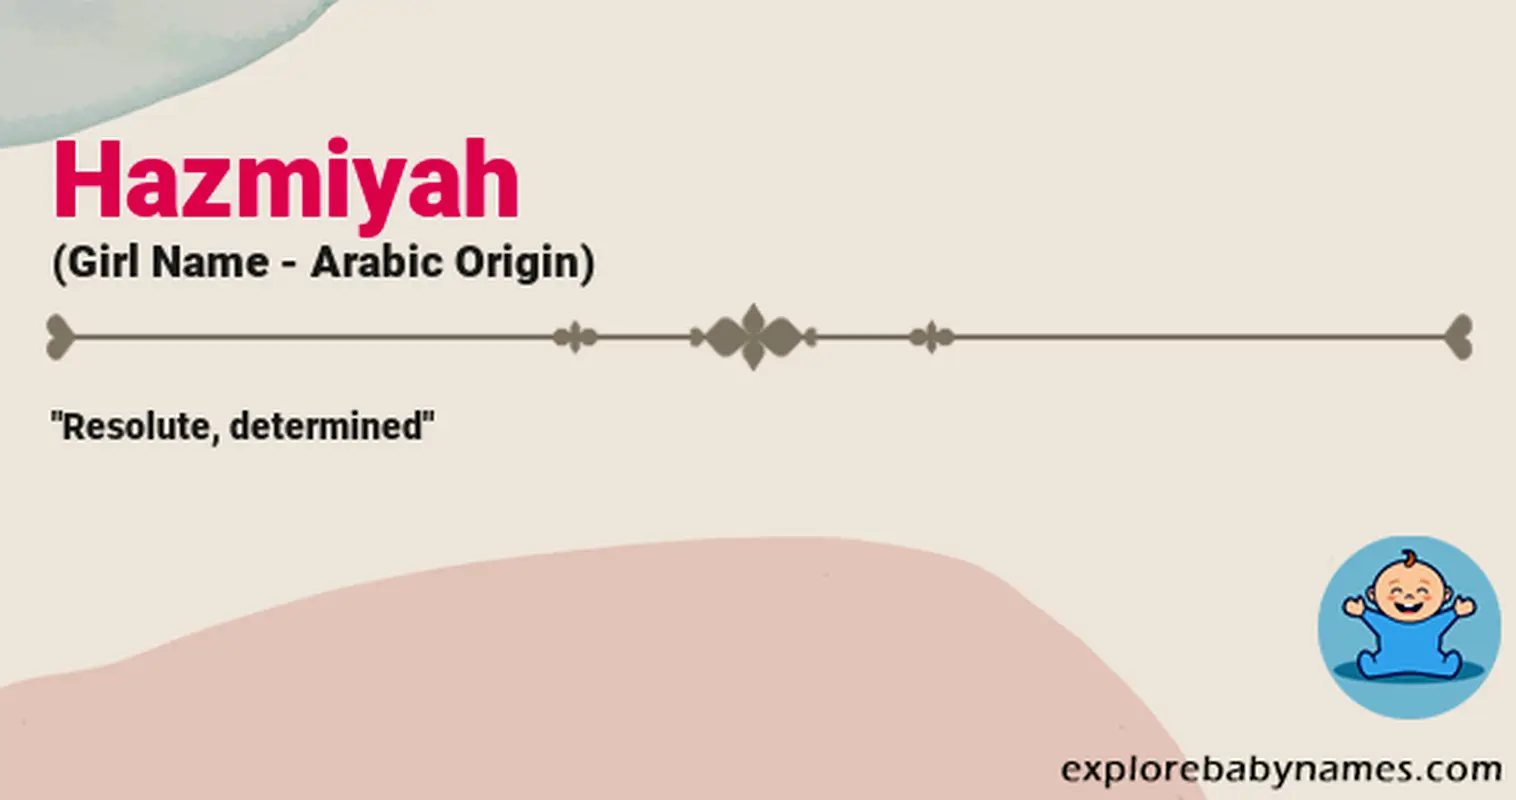 Meaning of Hazmiyah